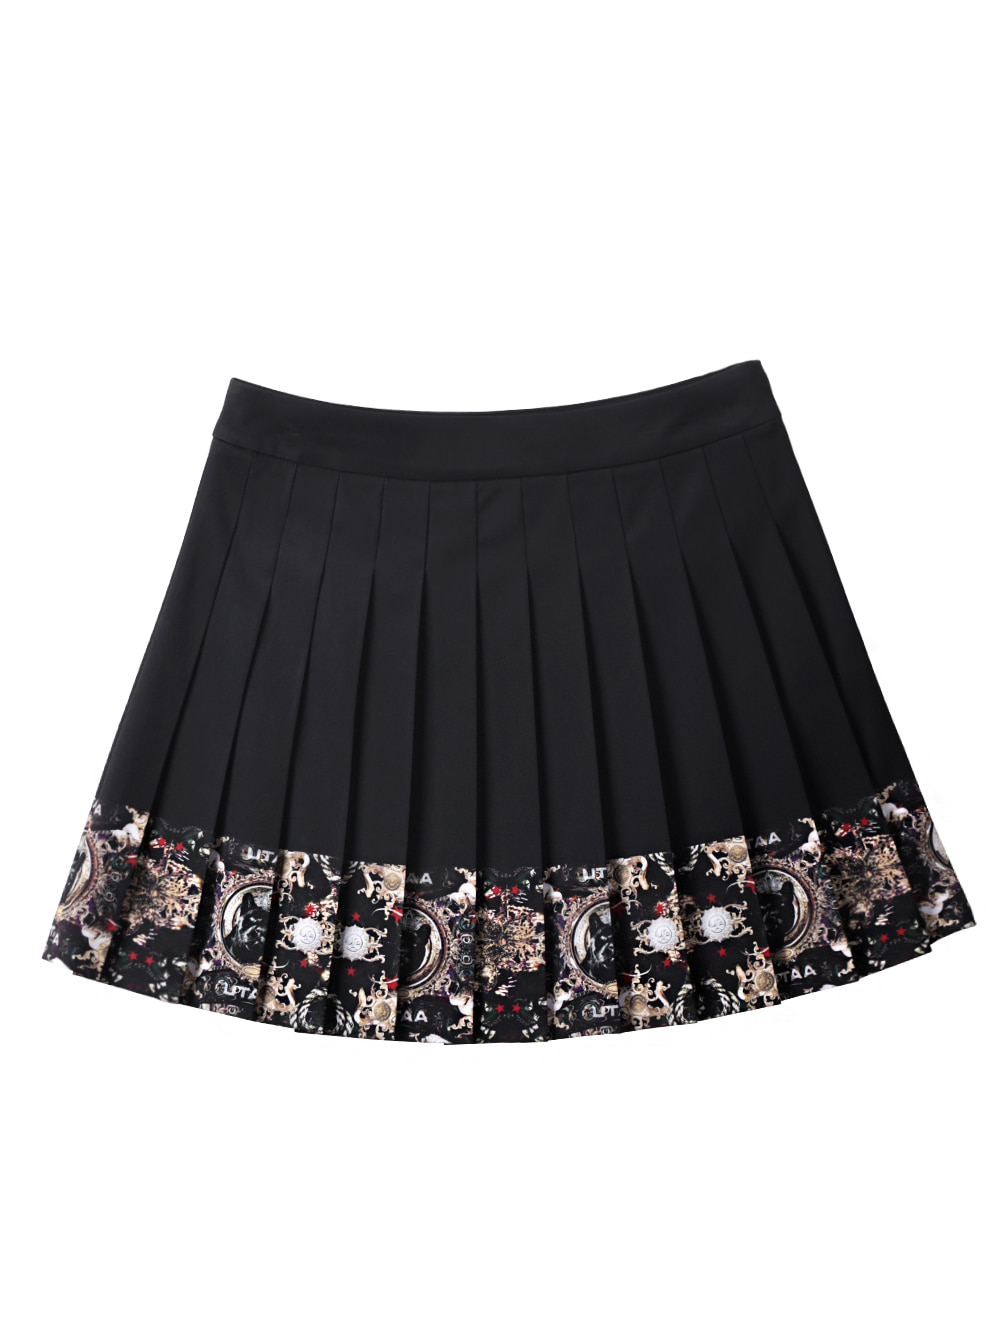 UTAA Knightmare Pleats Skirt (UC2SKF241BK)